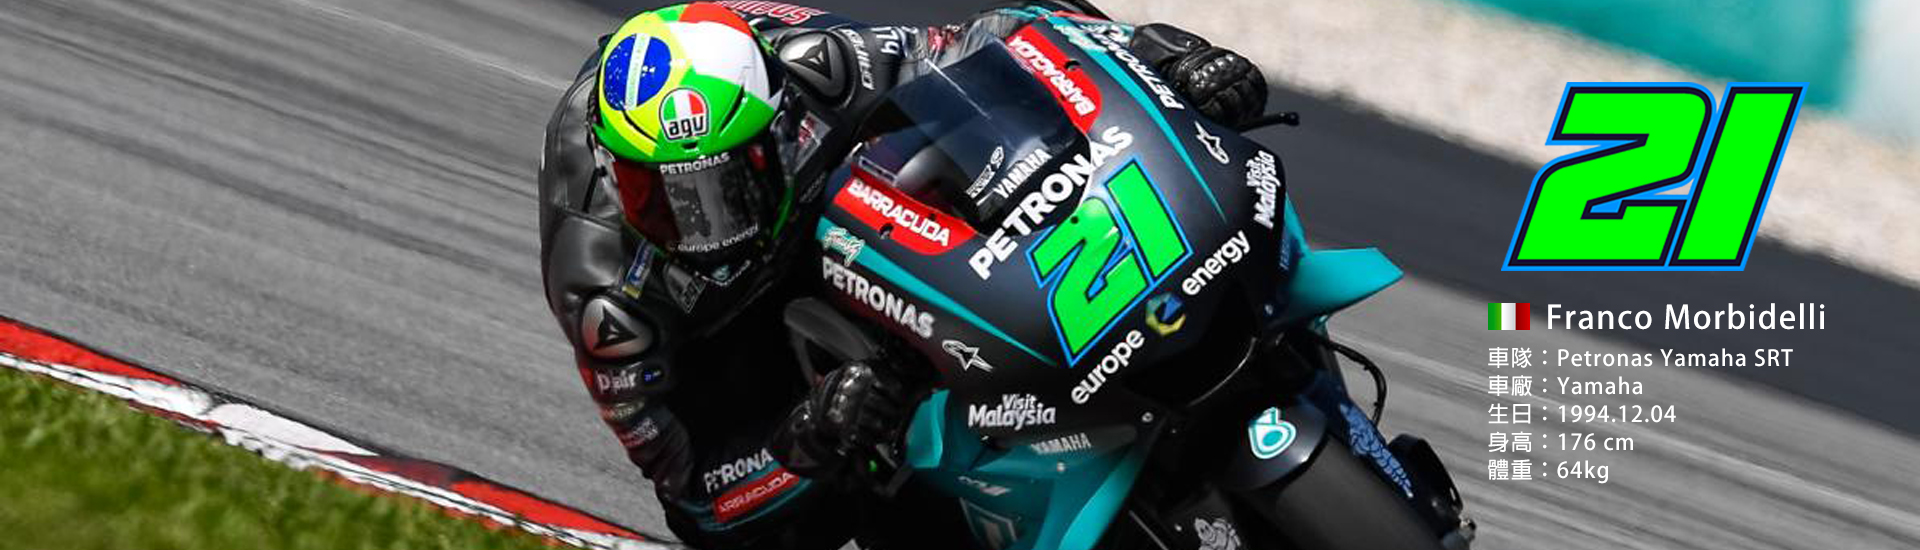 2021 MotoGP 【21】Franco Morbidelli